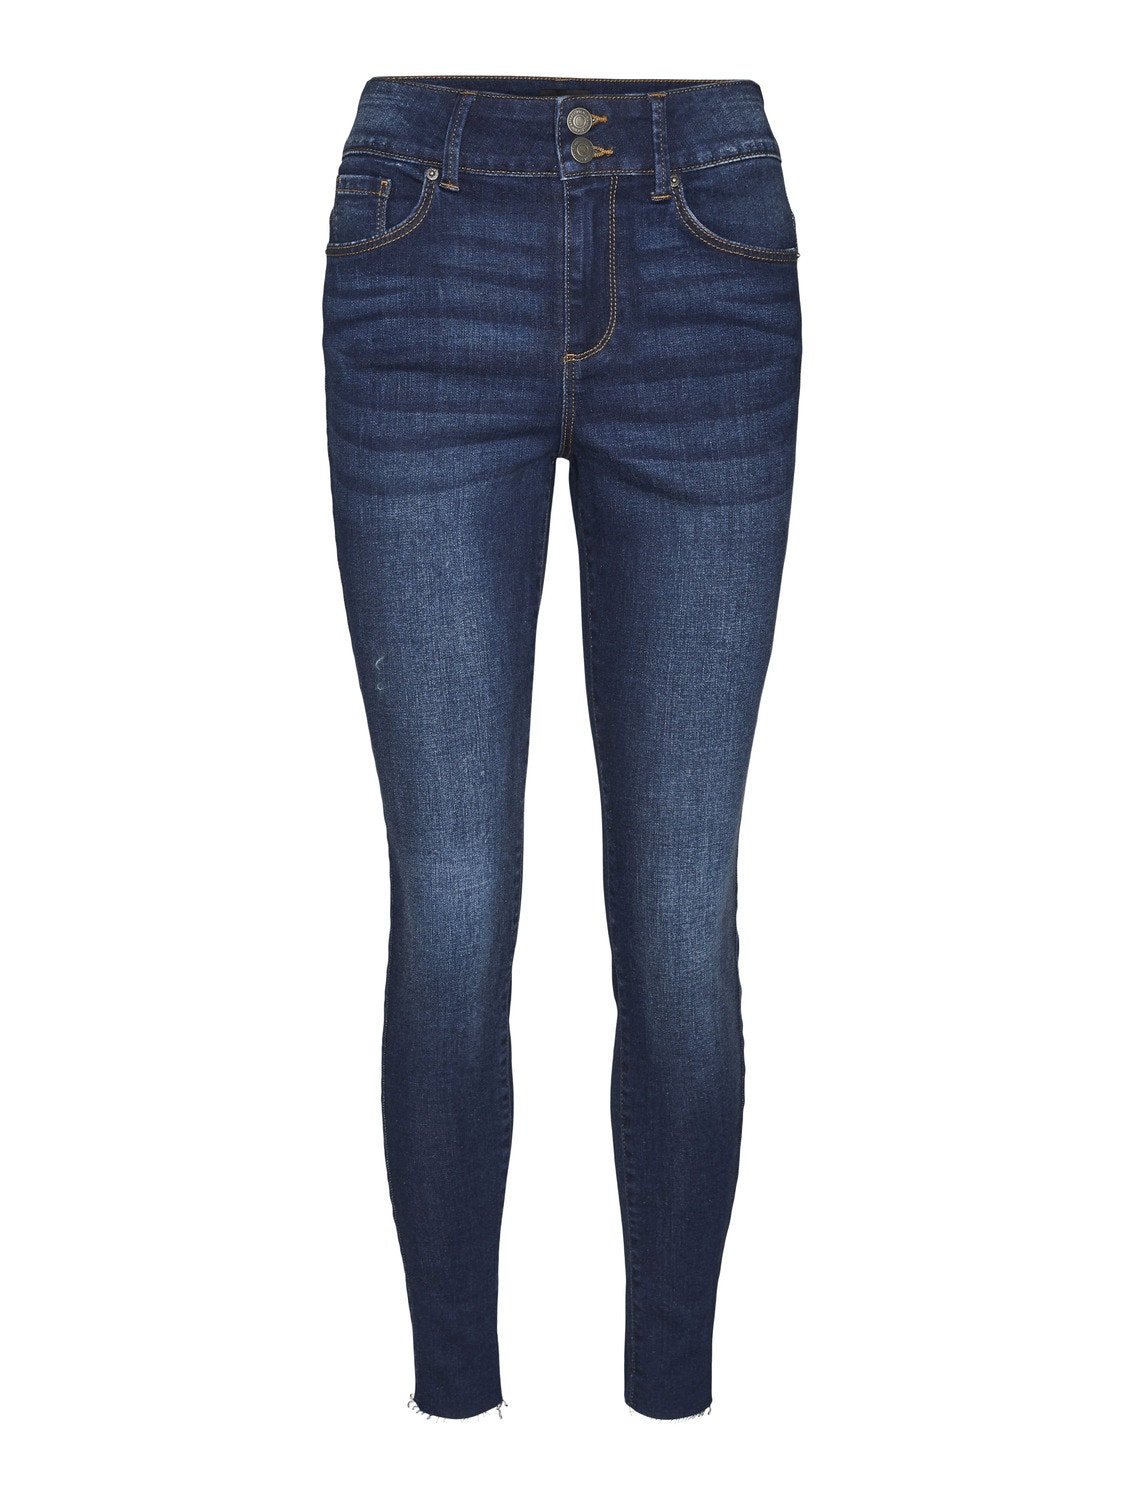 Vero Moda VMSOPHIA High rise Skinny Fit Jeans -Dark Blue Denim - 10290393